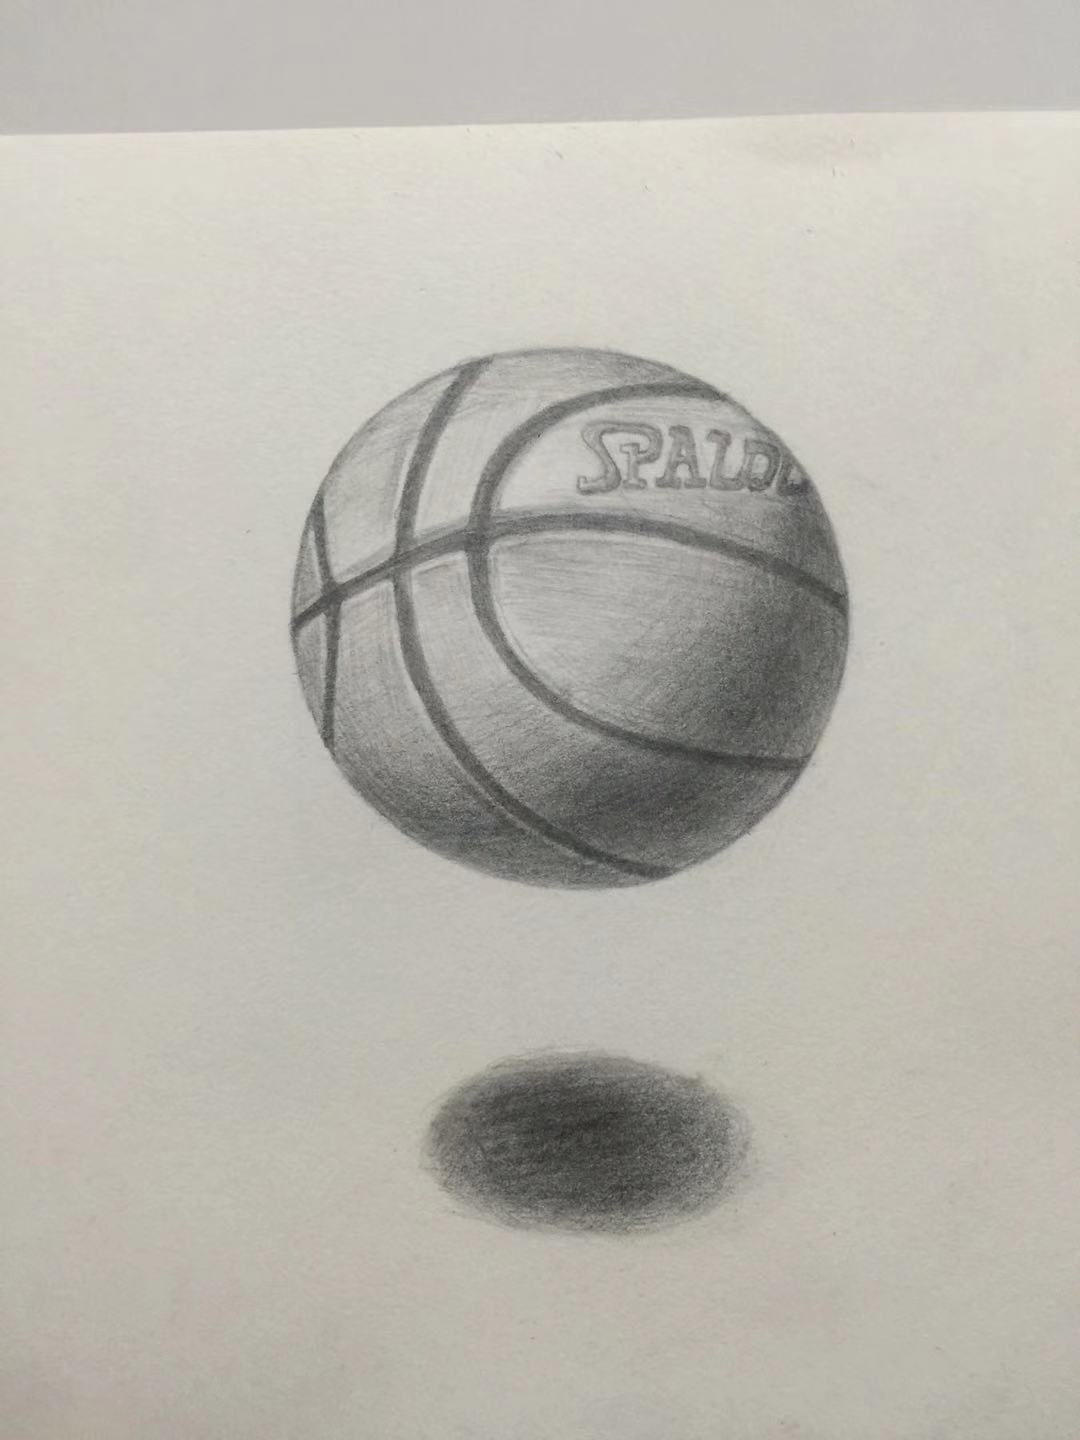 素描静物篮球图片